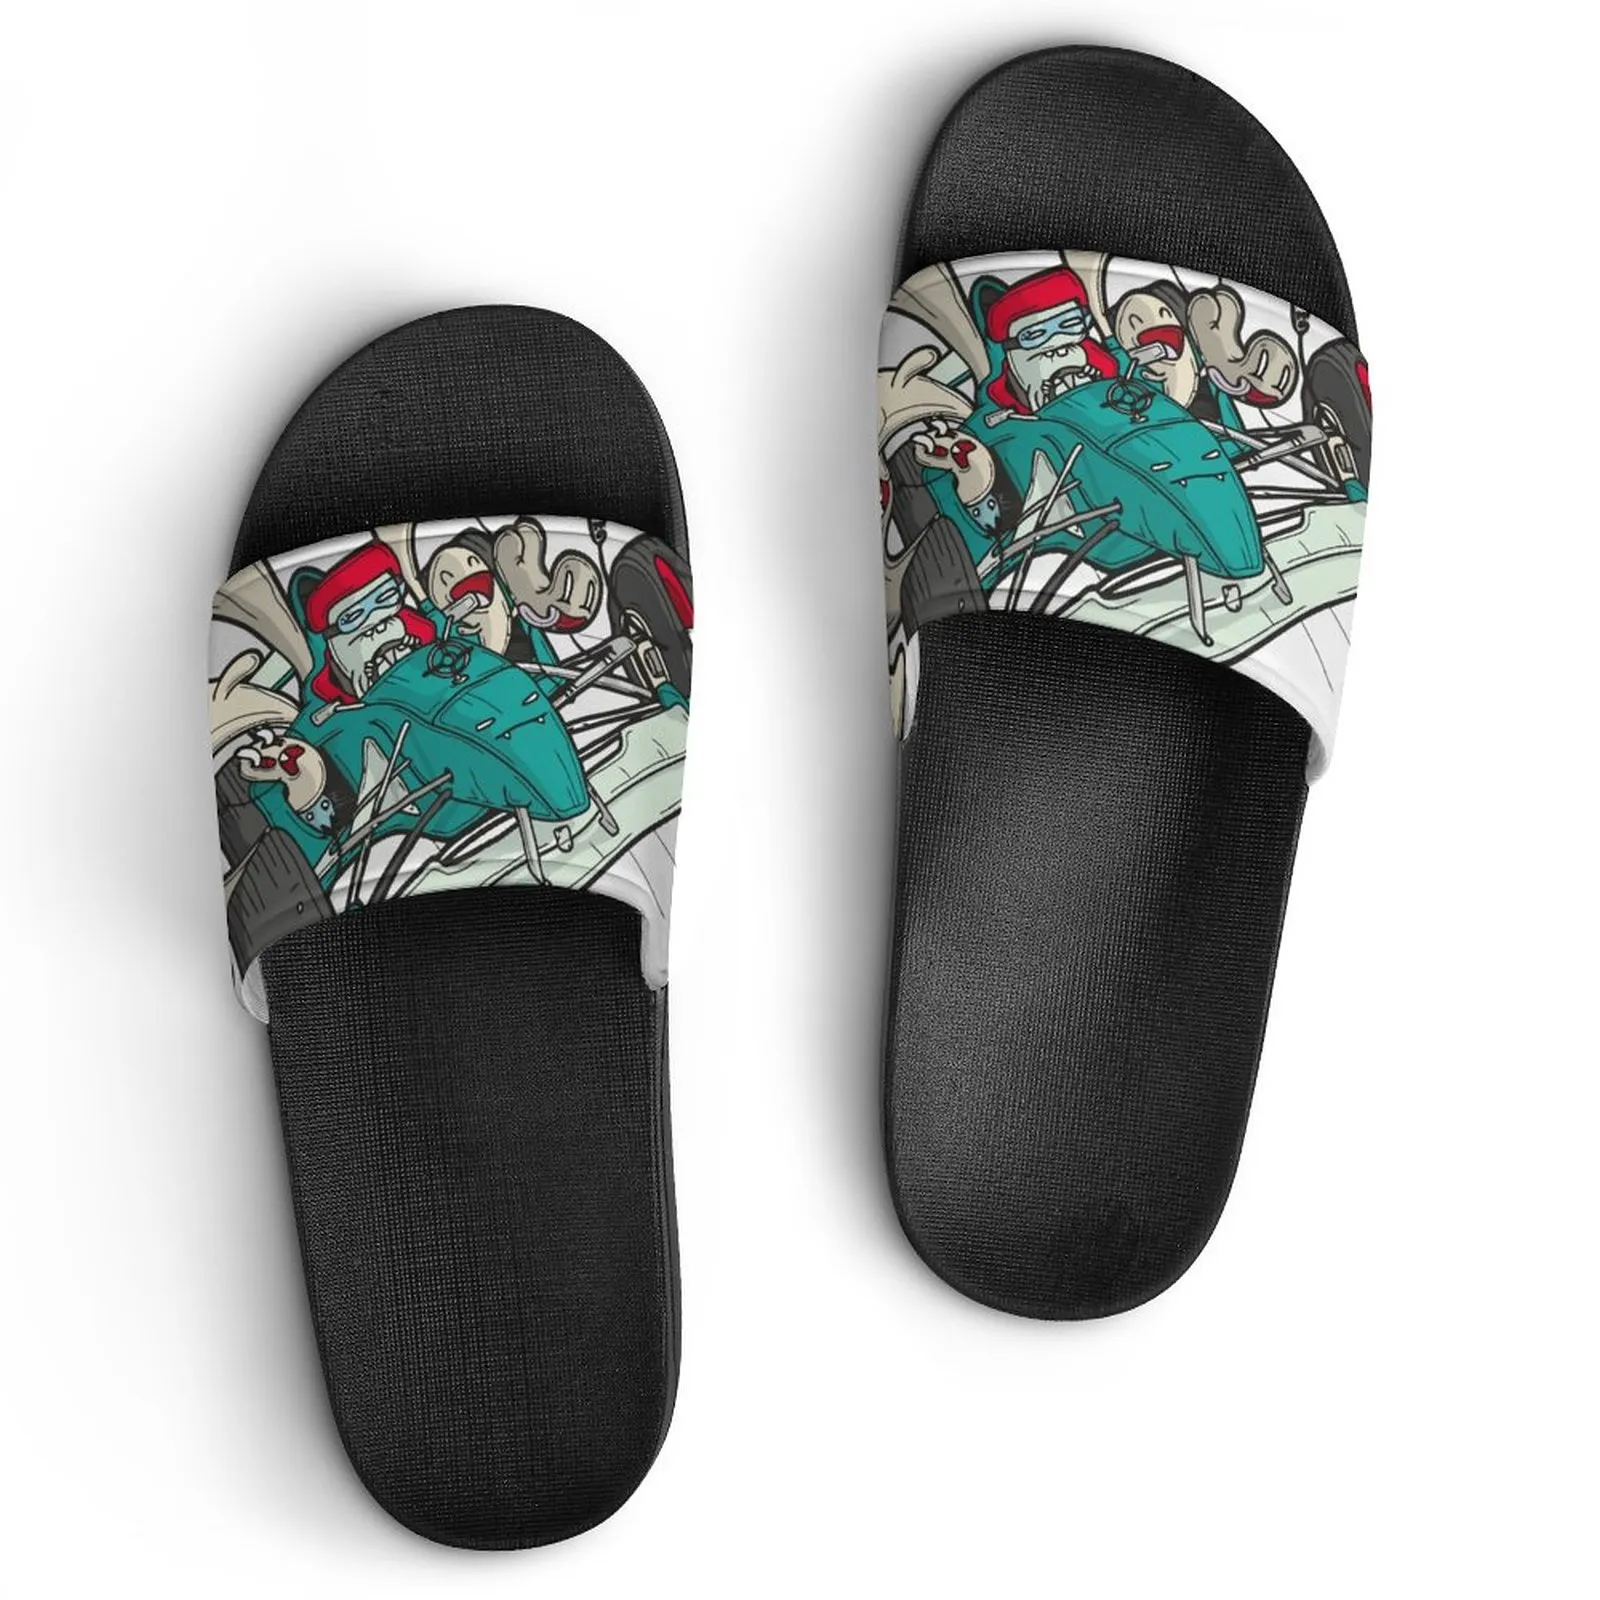 DIY Chaussures personnalisées Fournir des images pour soutenir la personnalisation des pantoufles ahdoej sandales mens womens fashion